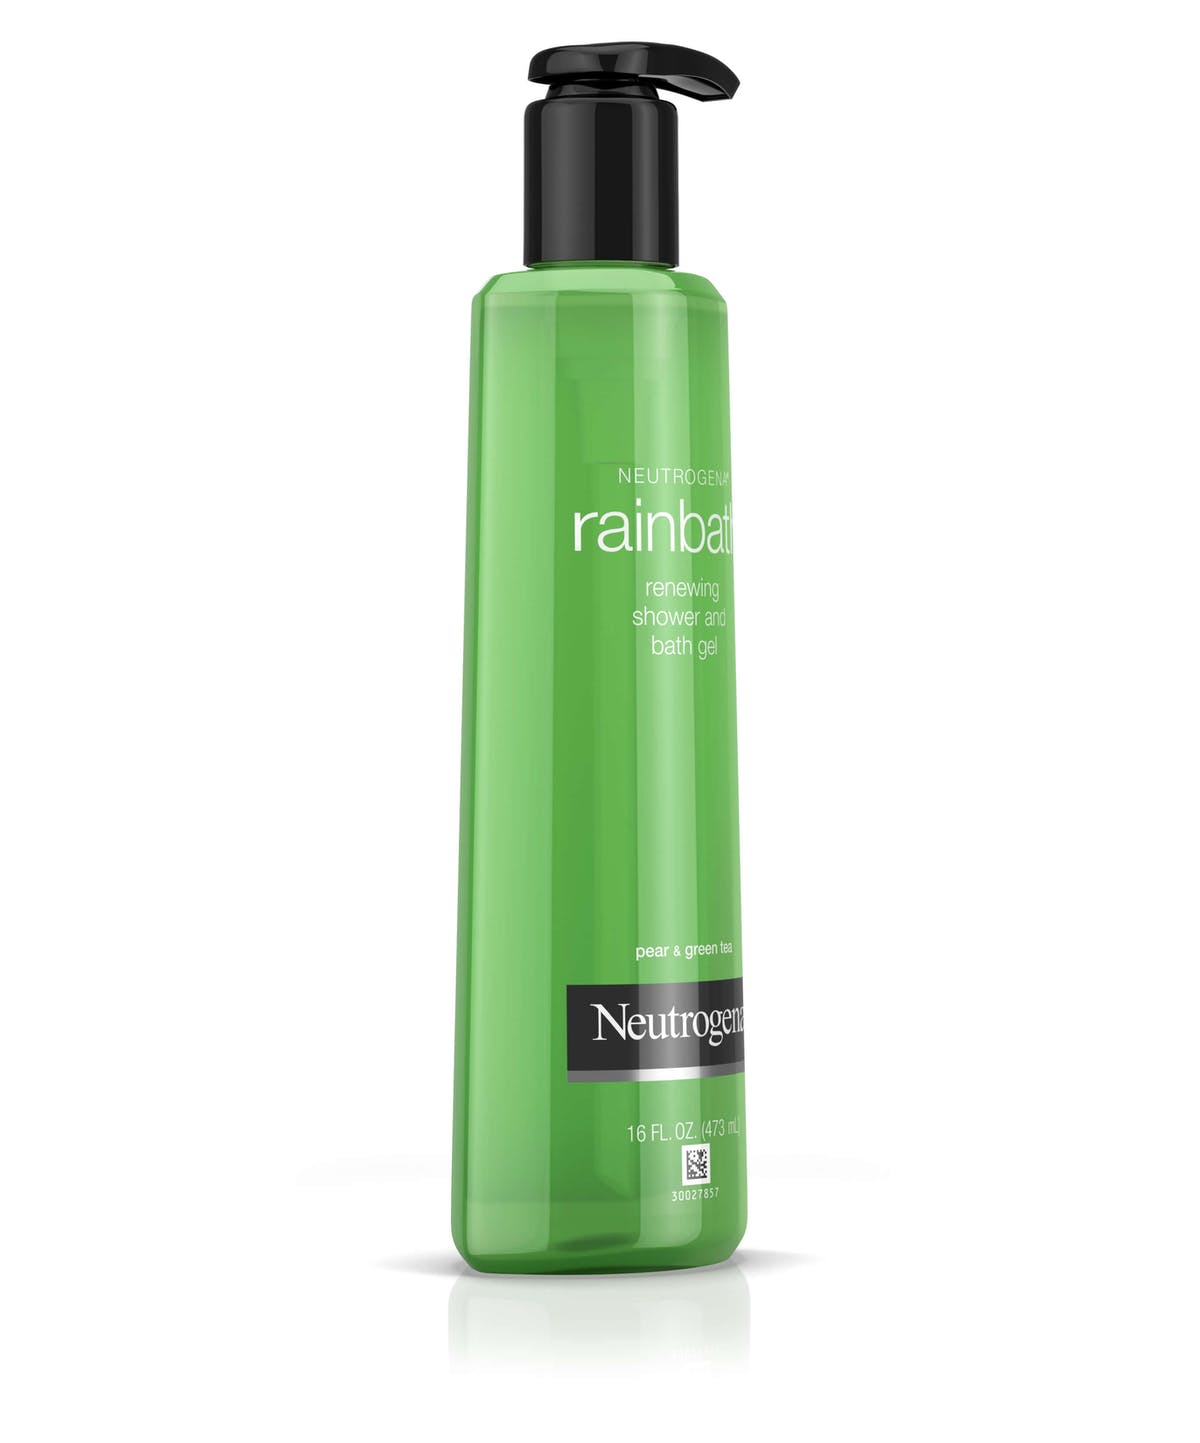 Neutrogena Rainbath Renewing Shower and Bath Gel, Pear & Green Tea (40 oz)